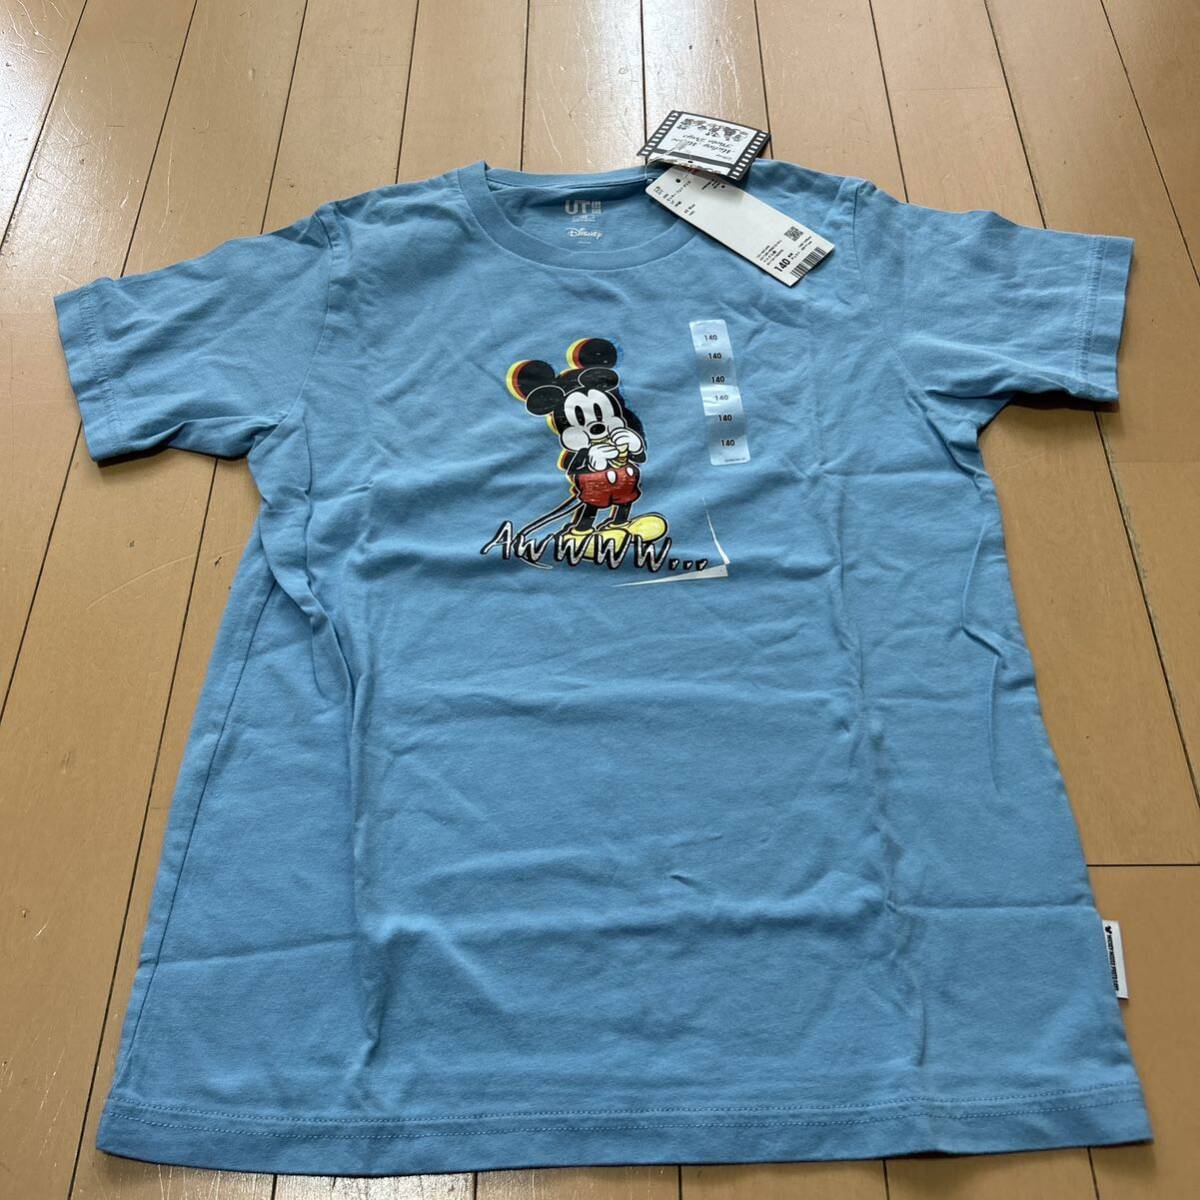  новый товар не использовался Uniqlo UNIQLO140 размер Disney сотрудничество Mickey фото Dayz футболка 